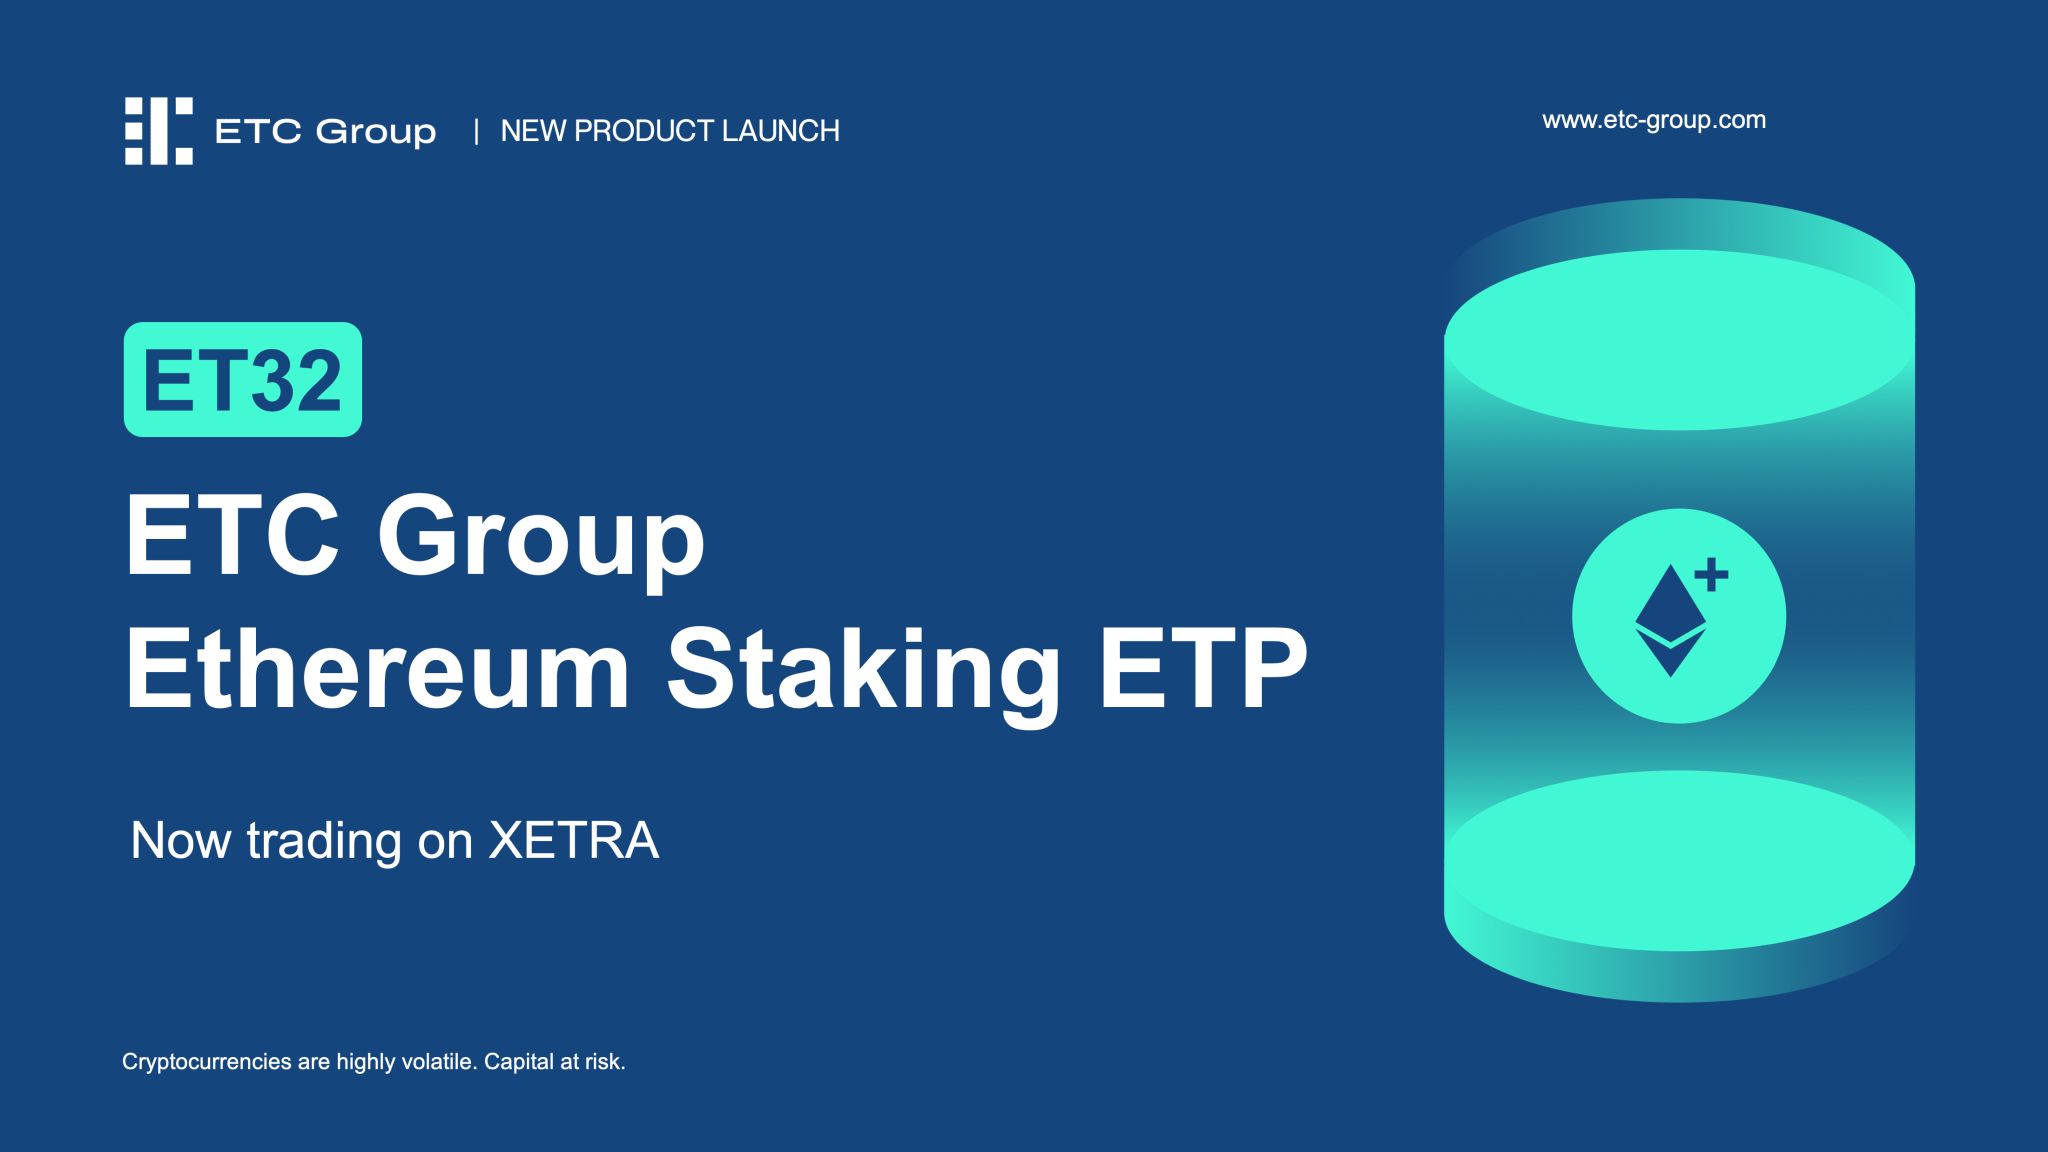 ETC Group är stolta över att avslöja lanseringen av en ny Ethereum produkt, ETC Group Ethereum Staking ETP (ET32) på Deutsche Börse Xetra Trading i morse.